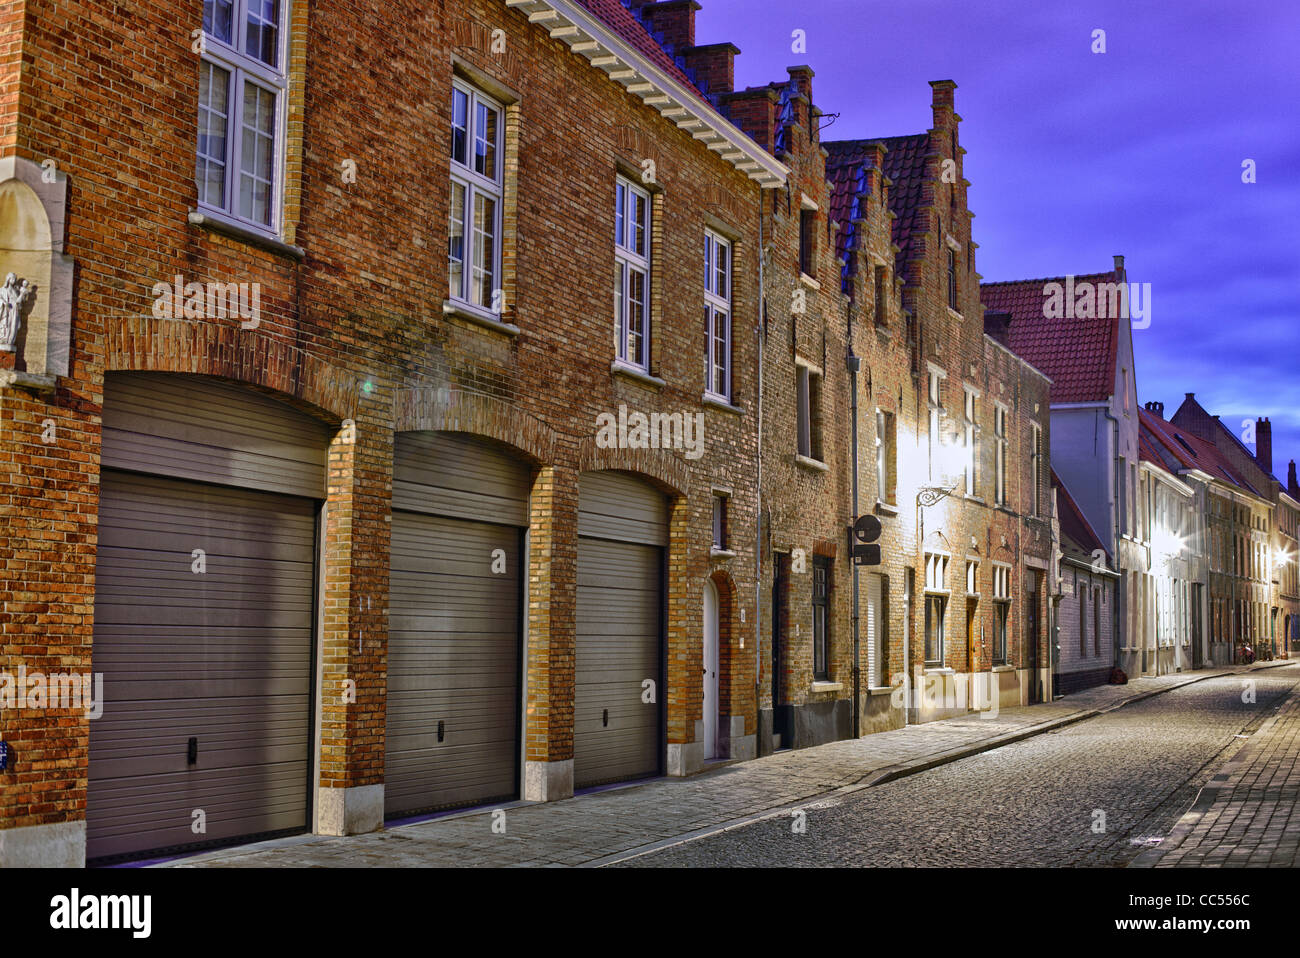 Tir de nuit d'une rue avec des maisons traditionnelles à Brugge (Bruges) en Belgique. Banque D'Images